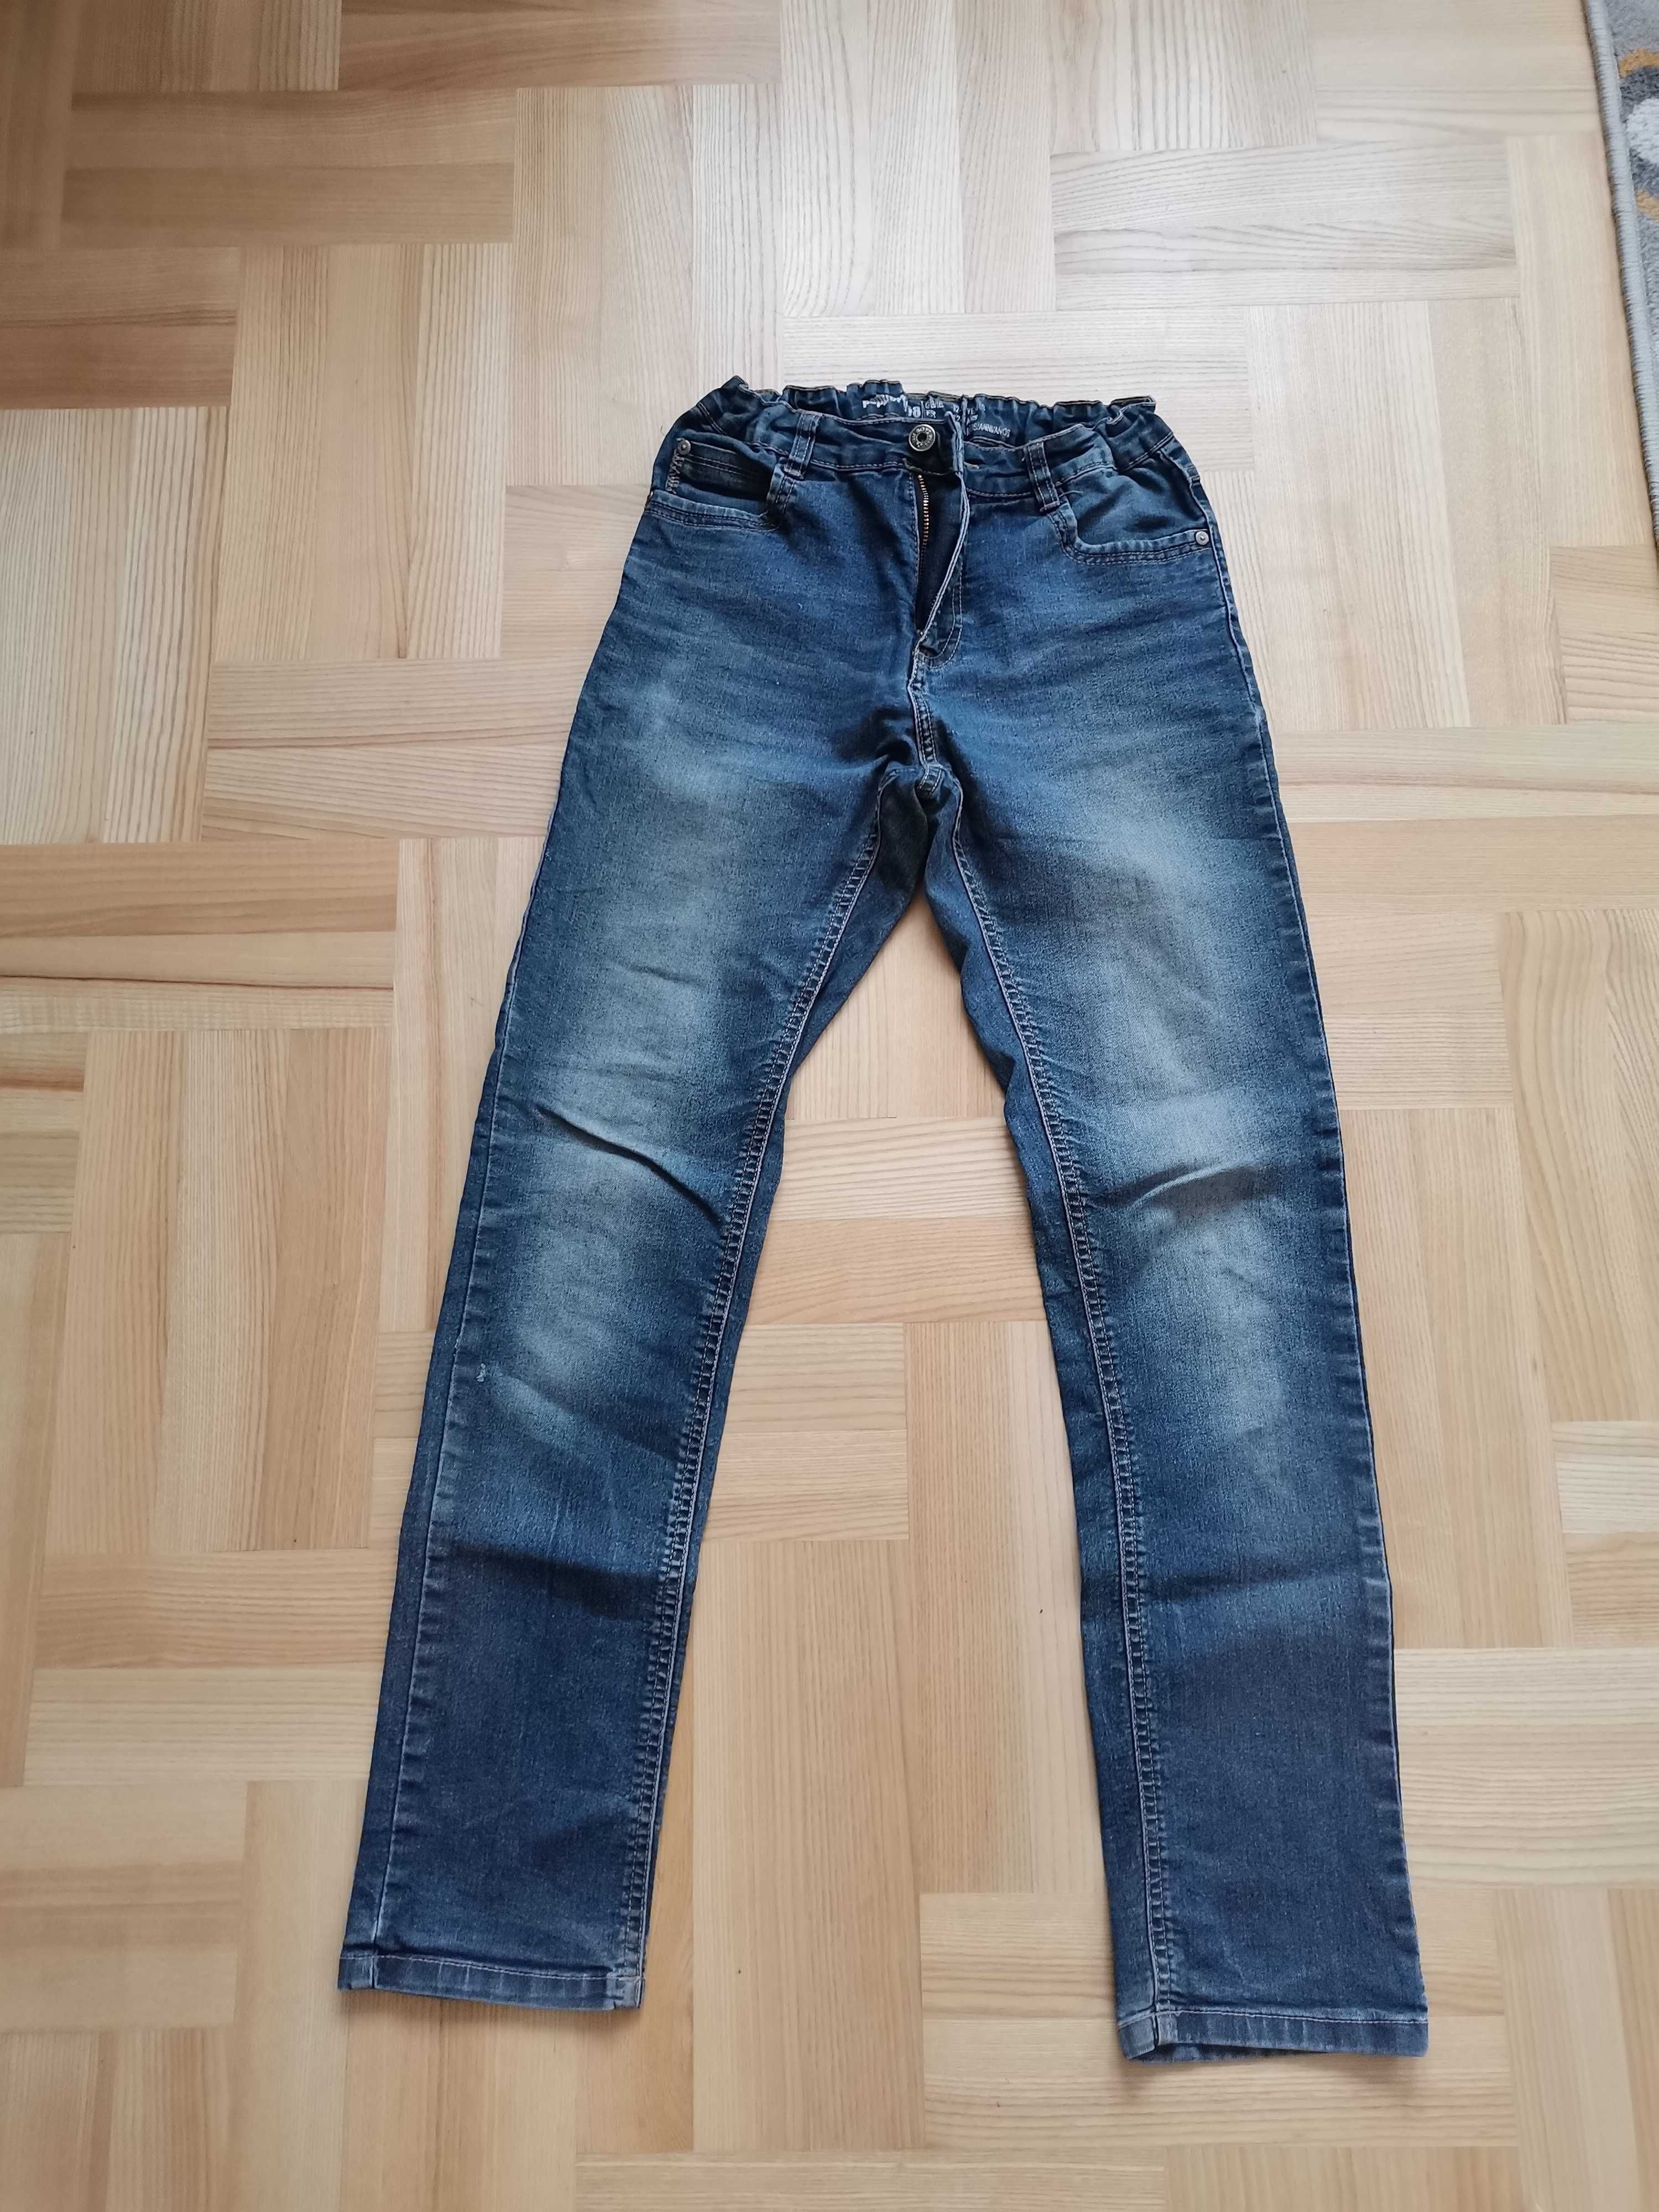 Spodnie jeansowe chłopięce 158 z regulacją w pasie.